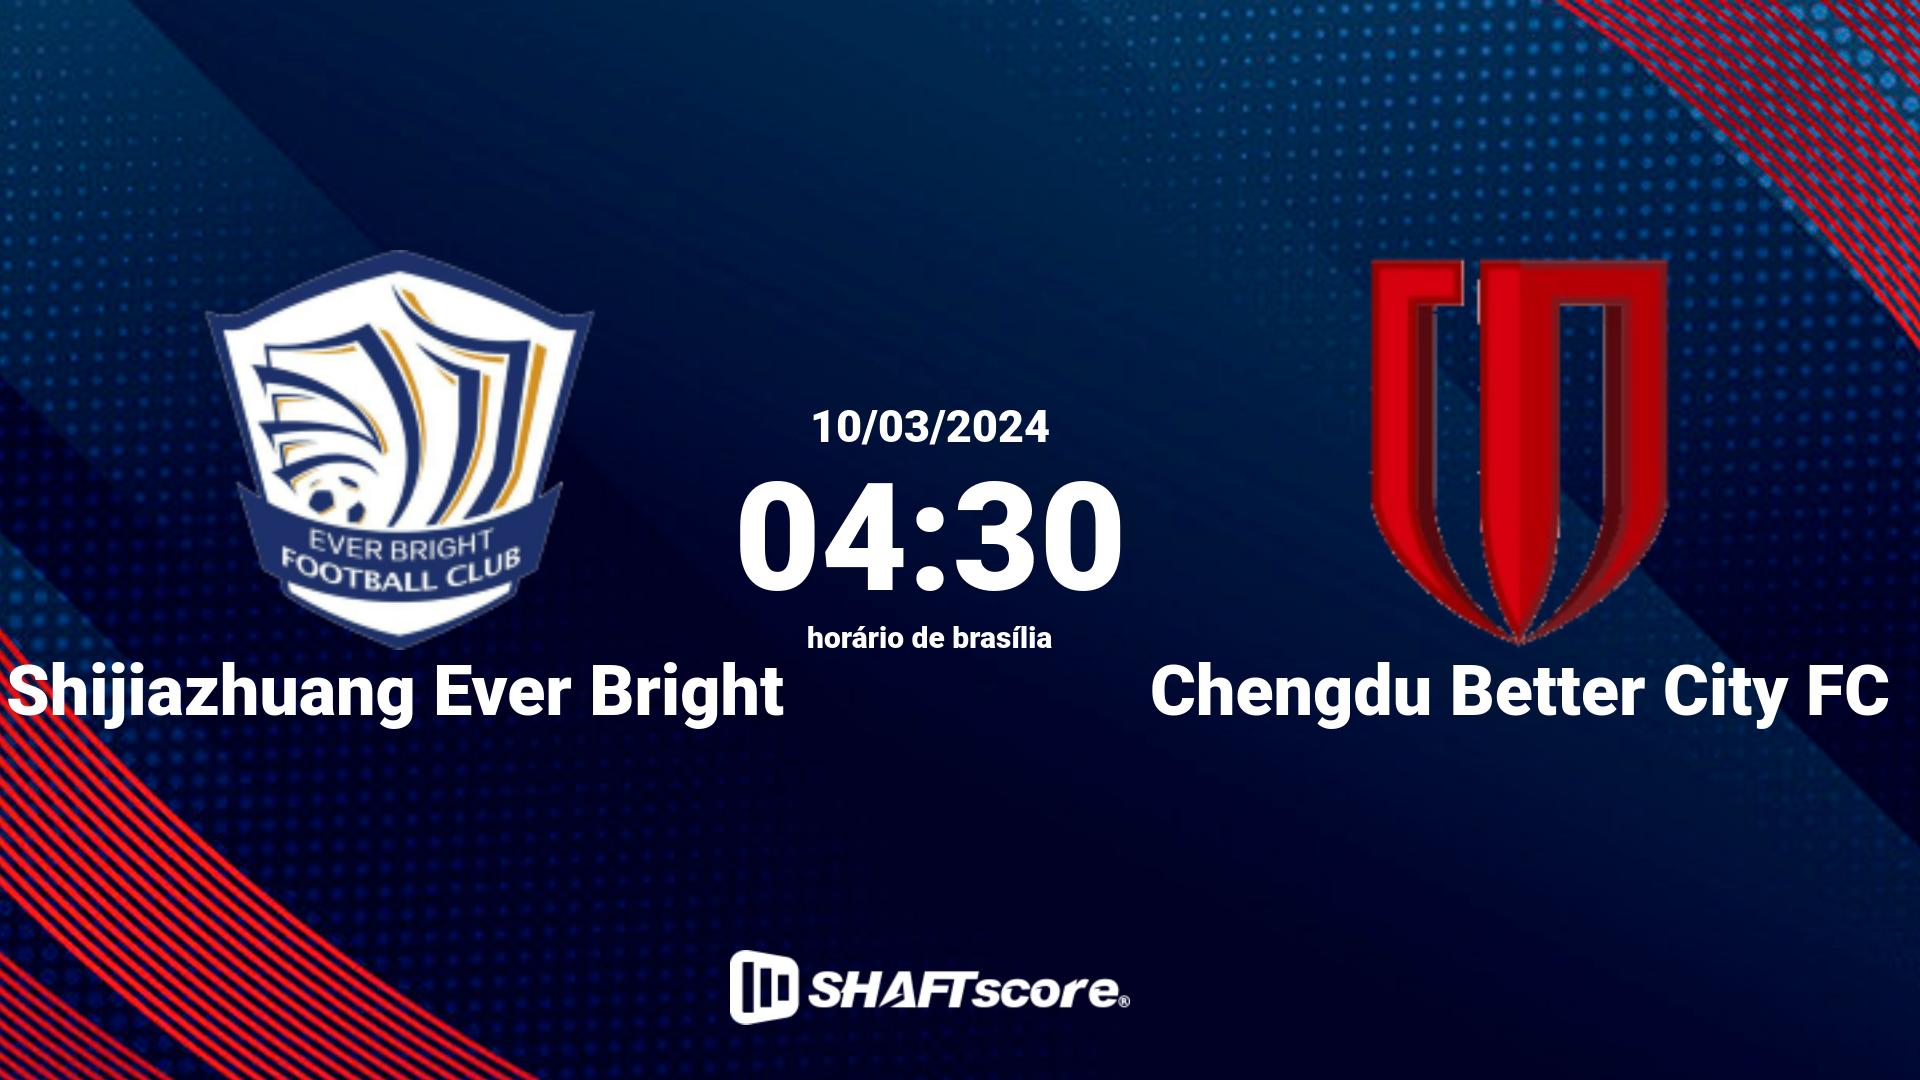 Estatísticas do jogo Shijiazhuang Ever Bright vs Chengdu Better City FC 10.03 04:30